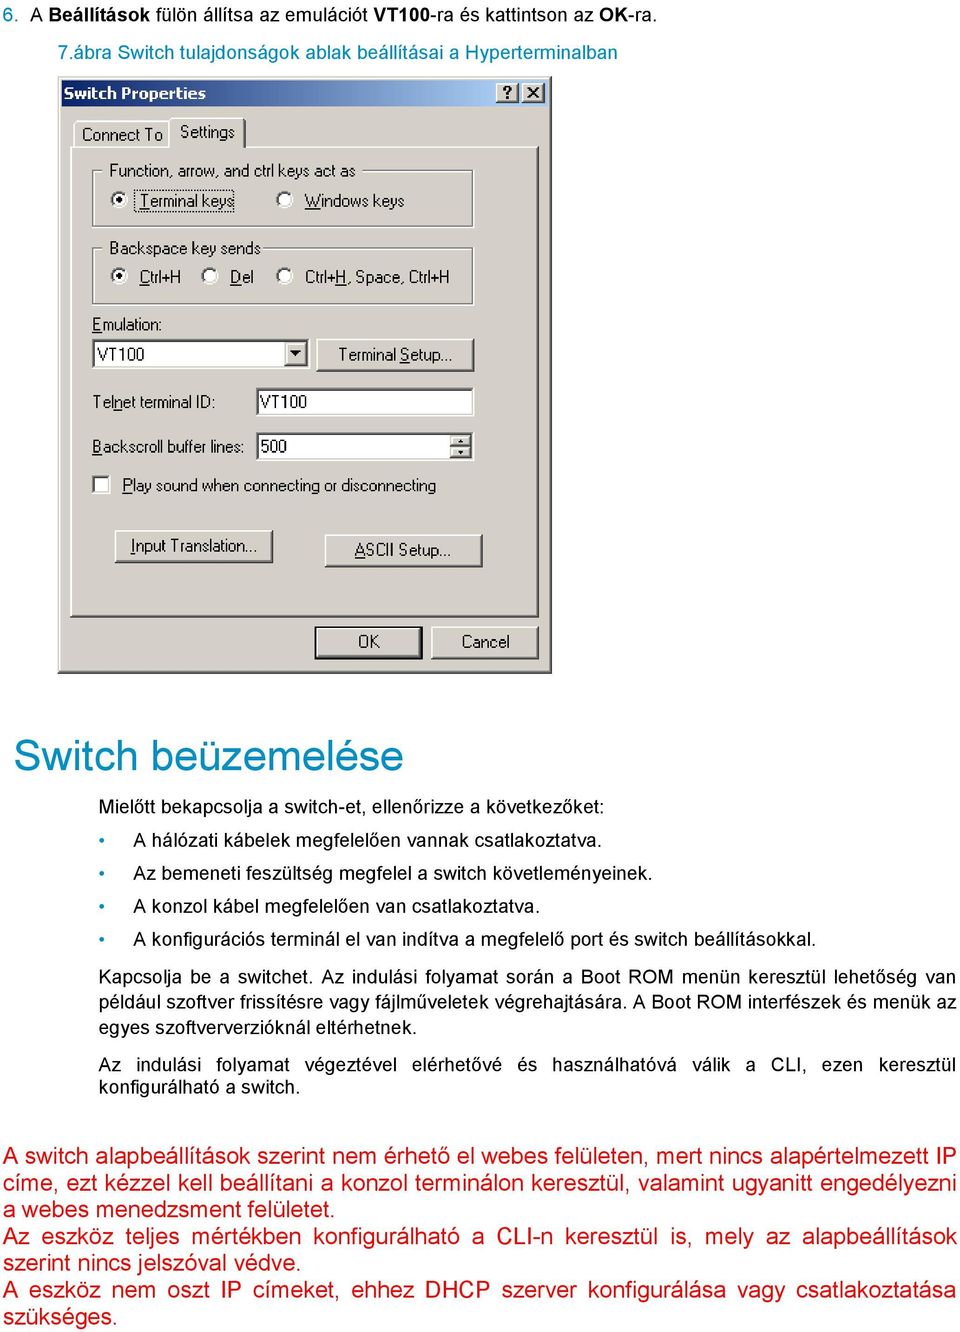 Az bemeneti feszültség megfelel a switch követleményeinek. A konzol kábel megfelelően van csatlakoztatva. A konfigurációs terminál el van indítva a megfelelő port és switch beállításokkal.